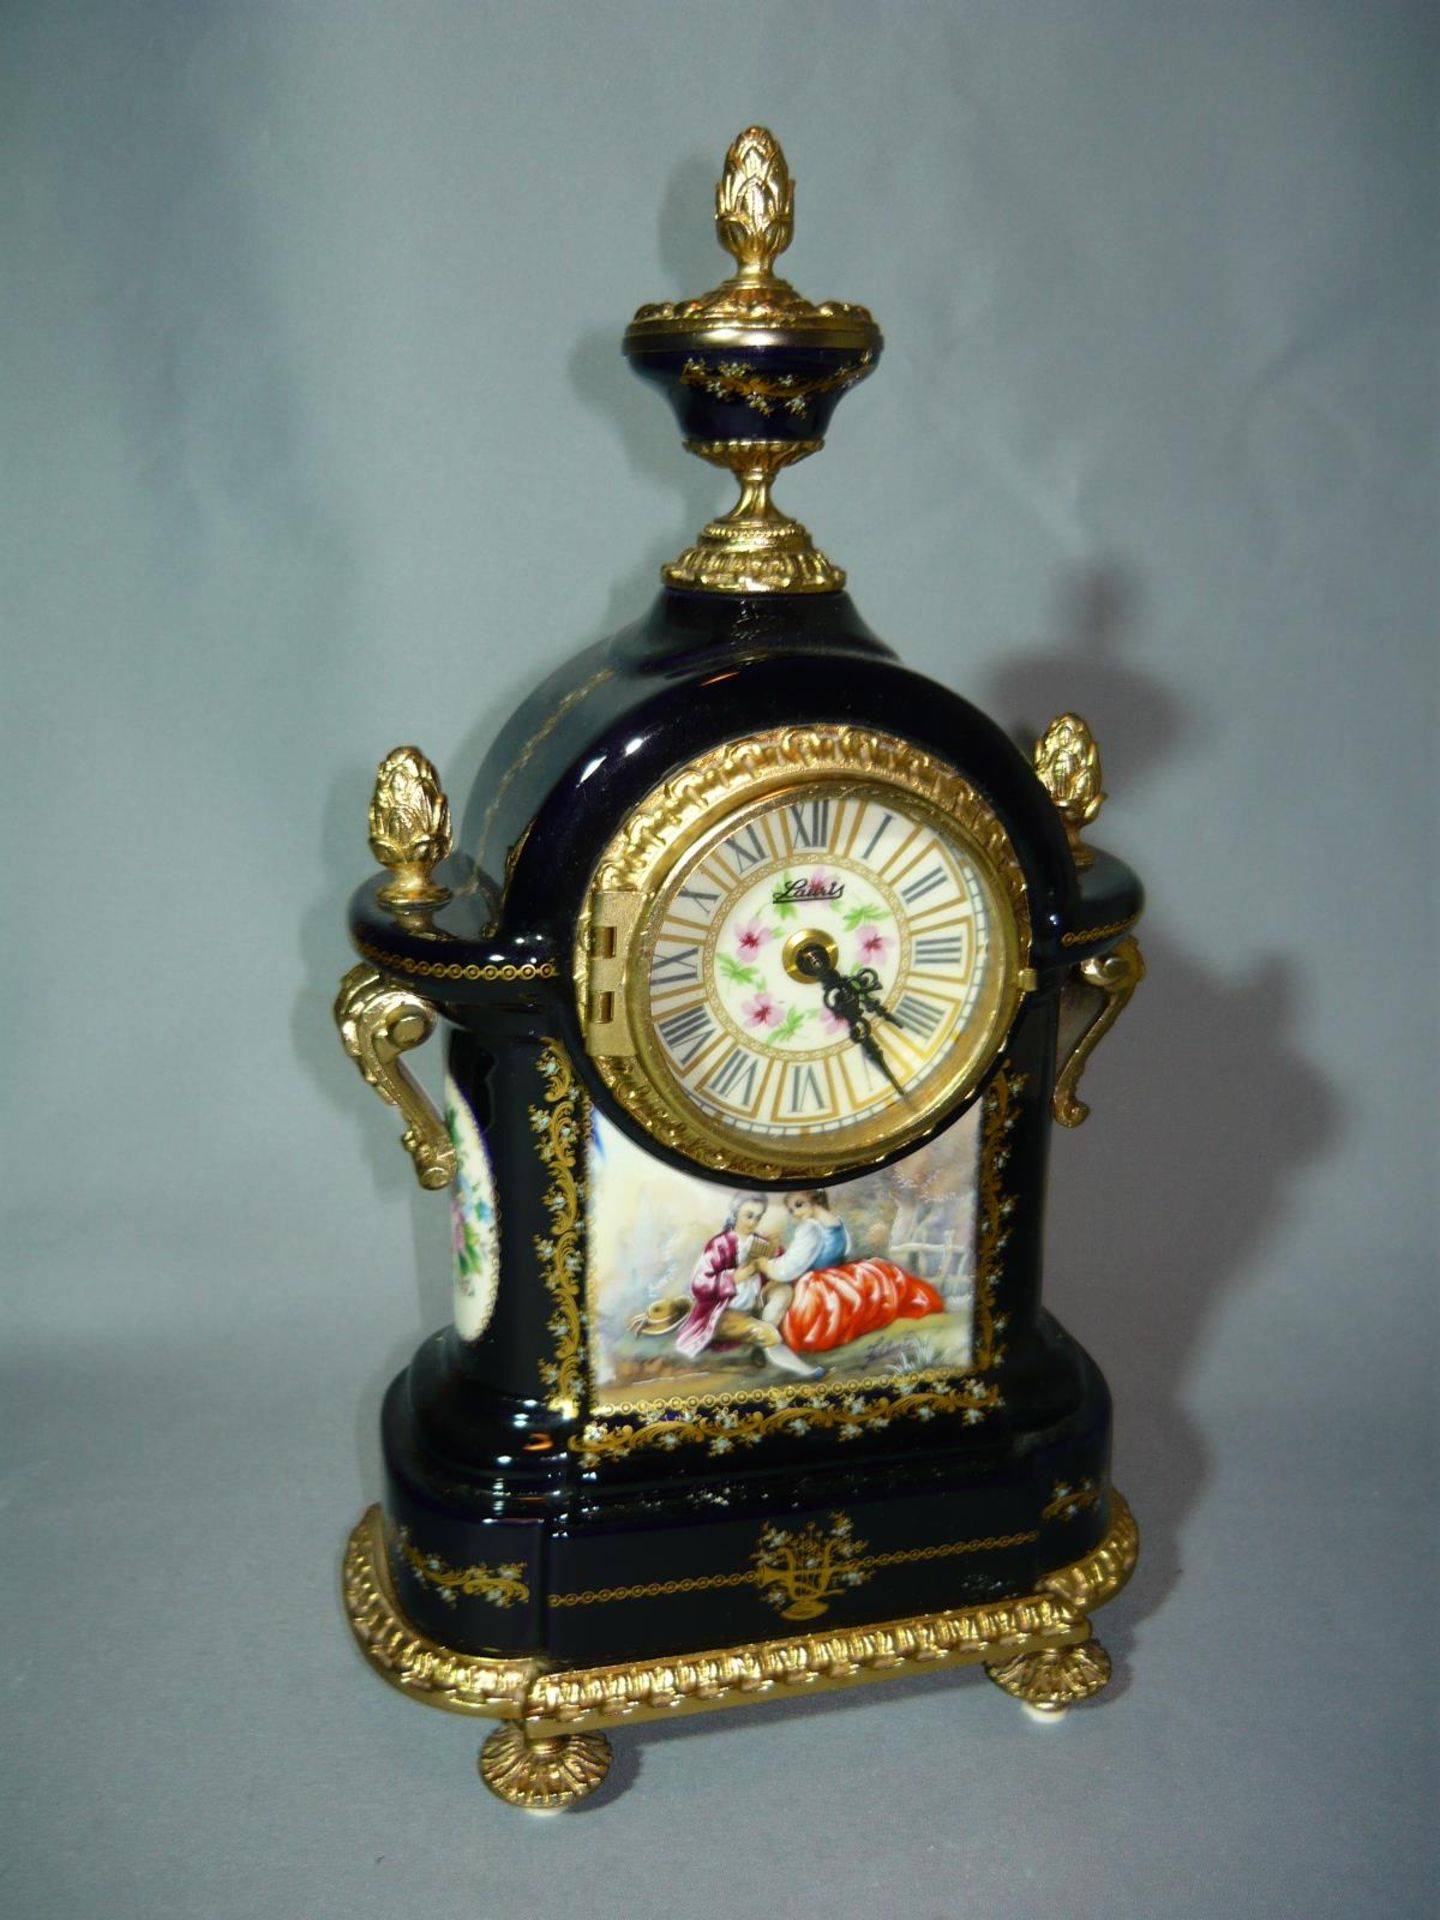 Prunkvolle Uhr mit galanter Szenerie. Um oder nach 1900. Rückseitig bezeichnet bleu Sevres. H. 34cm.